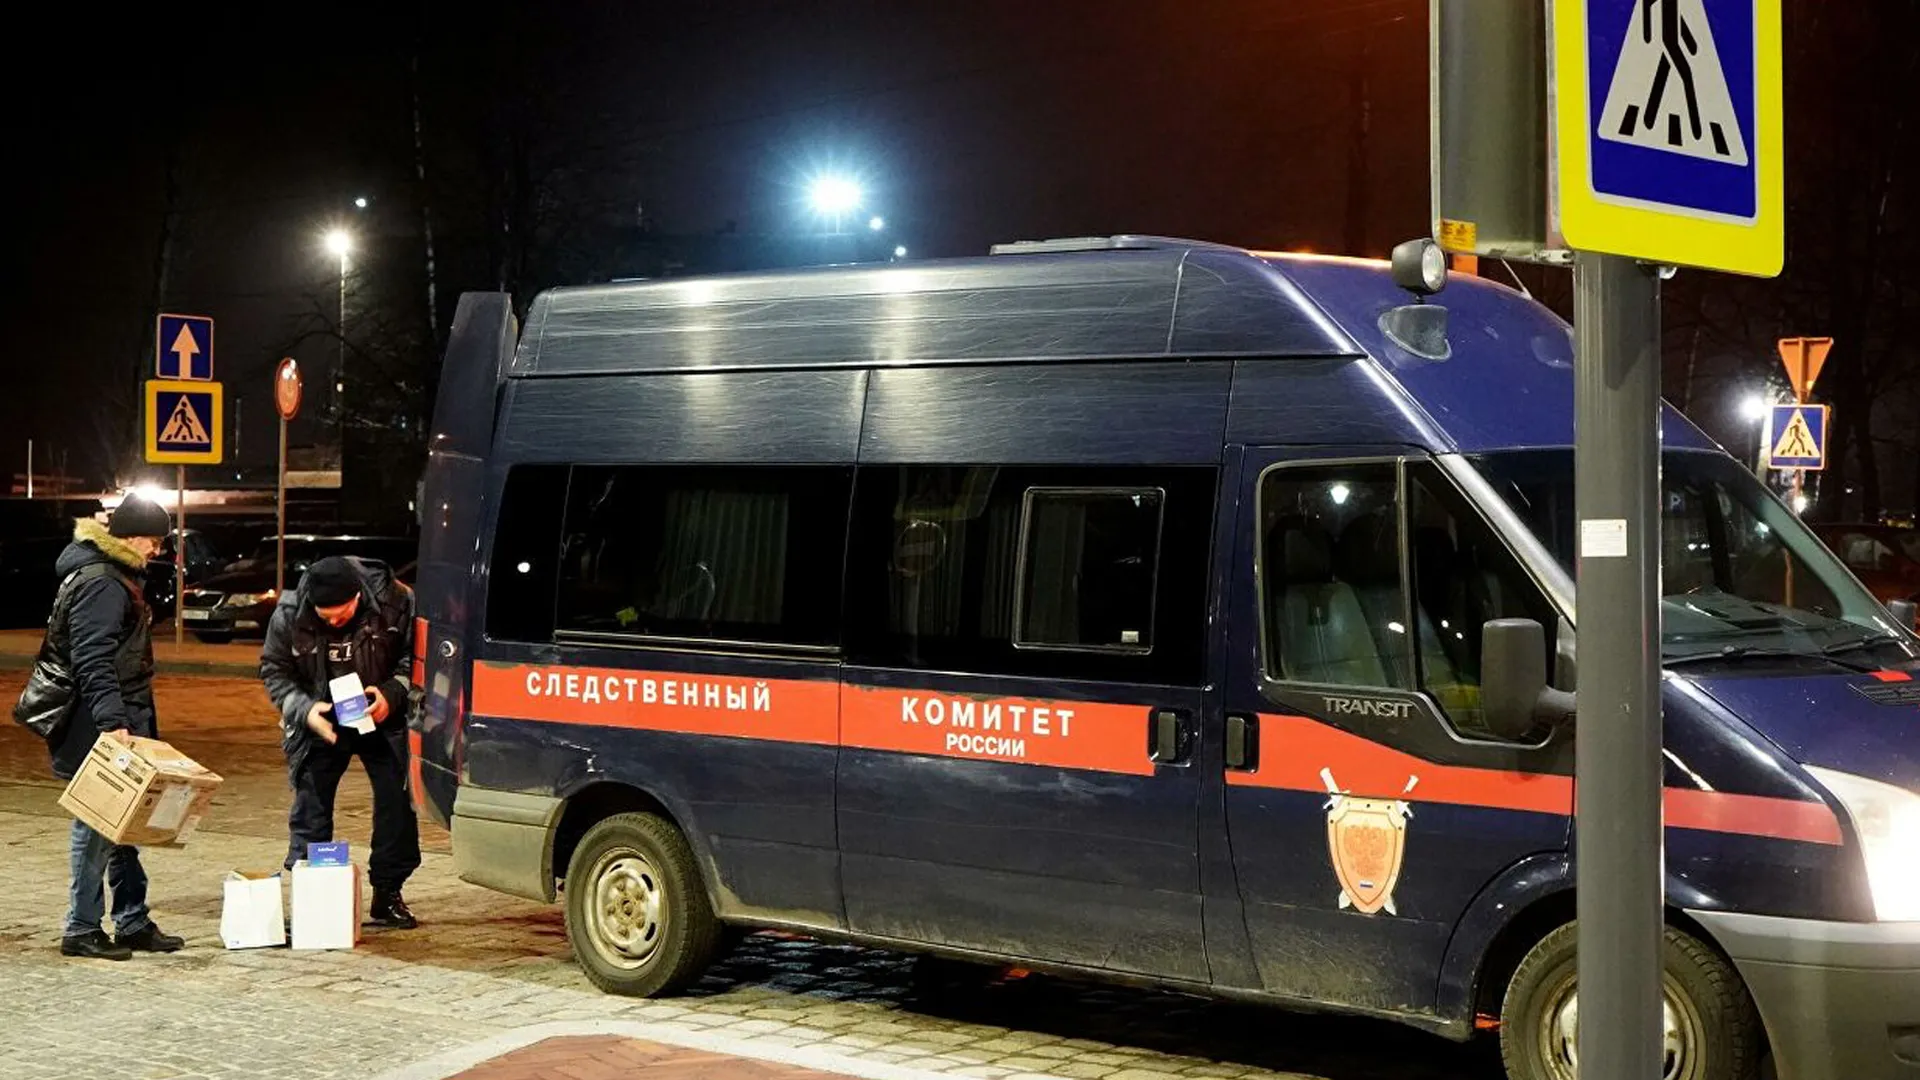 Очевидцы ночной стрельбы в Москве рассказали о моменте атаки